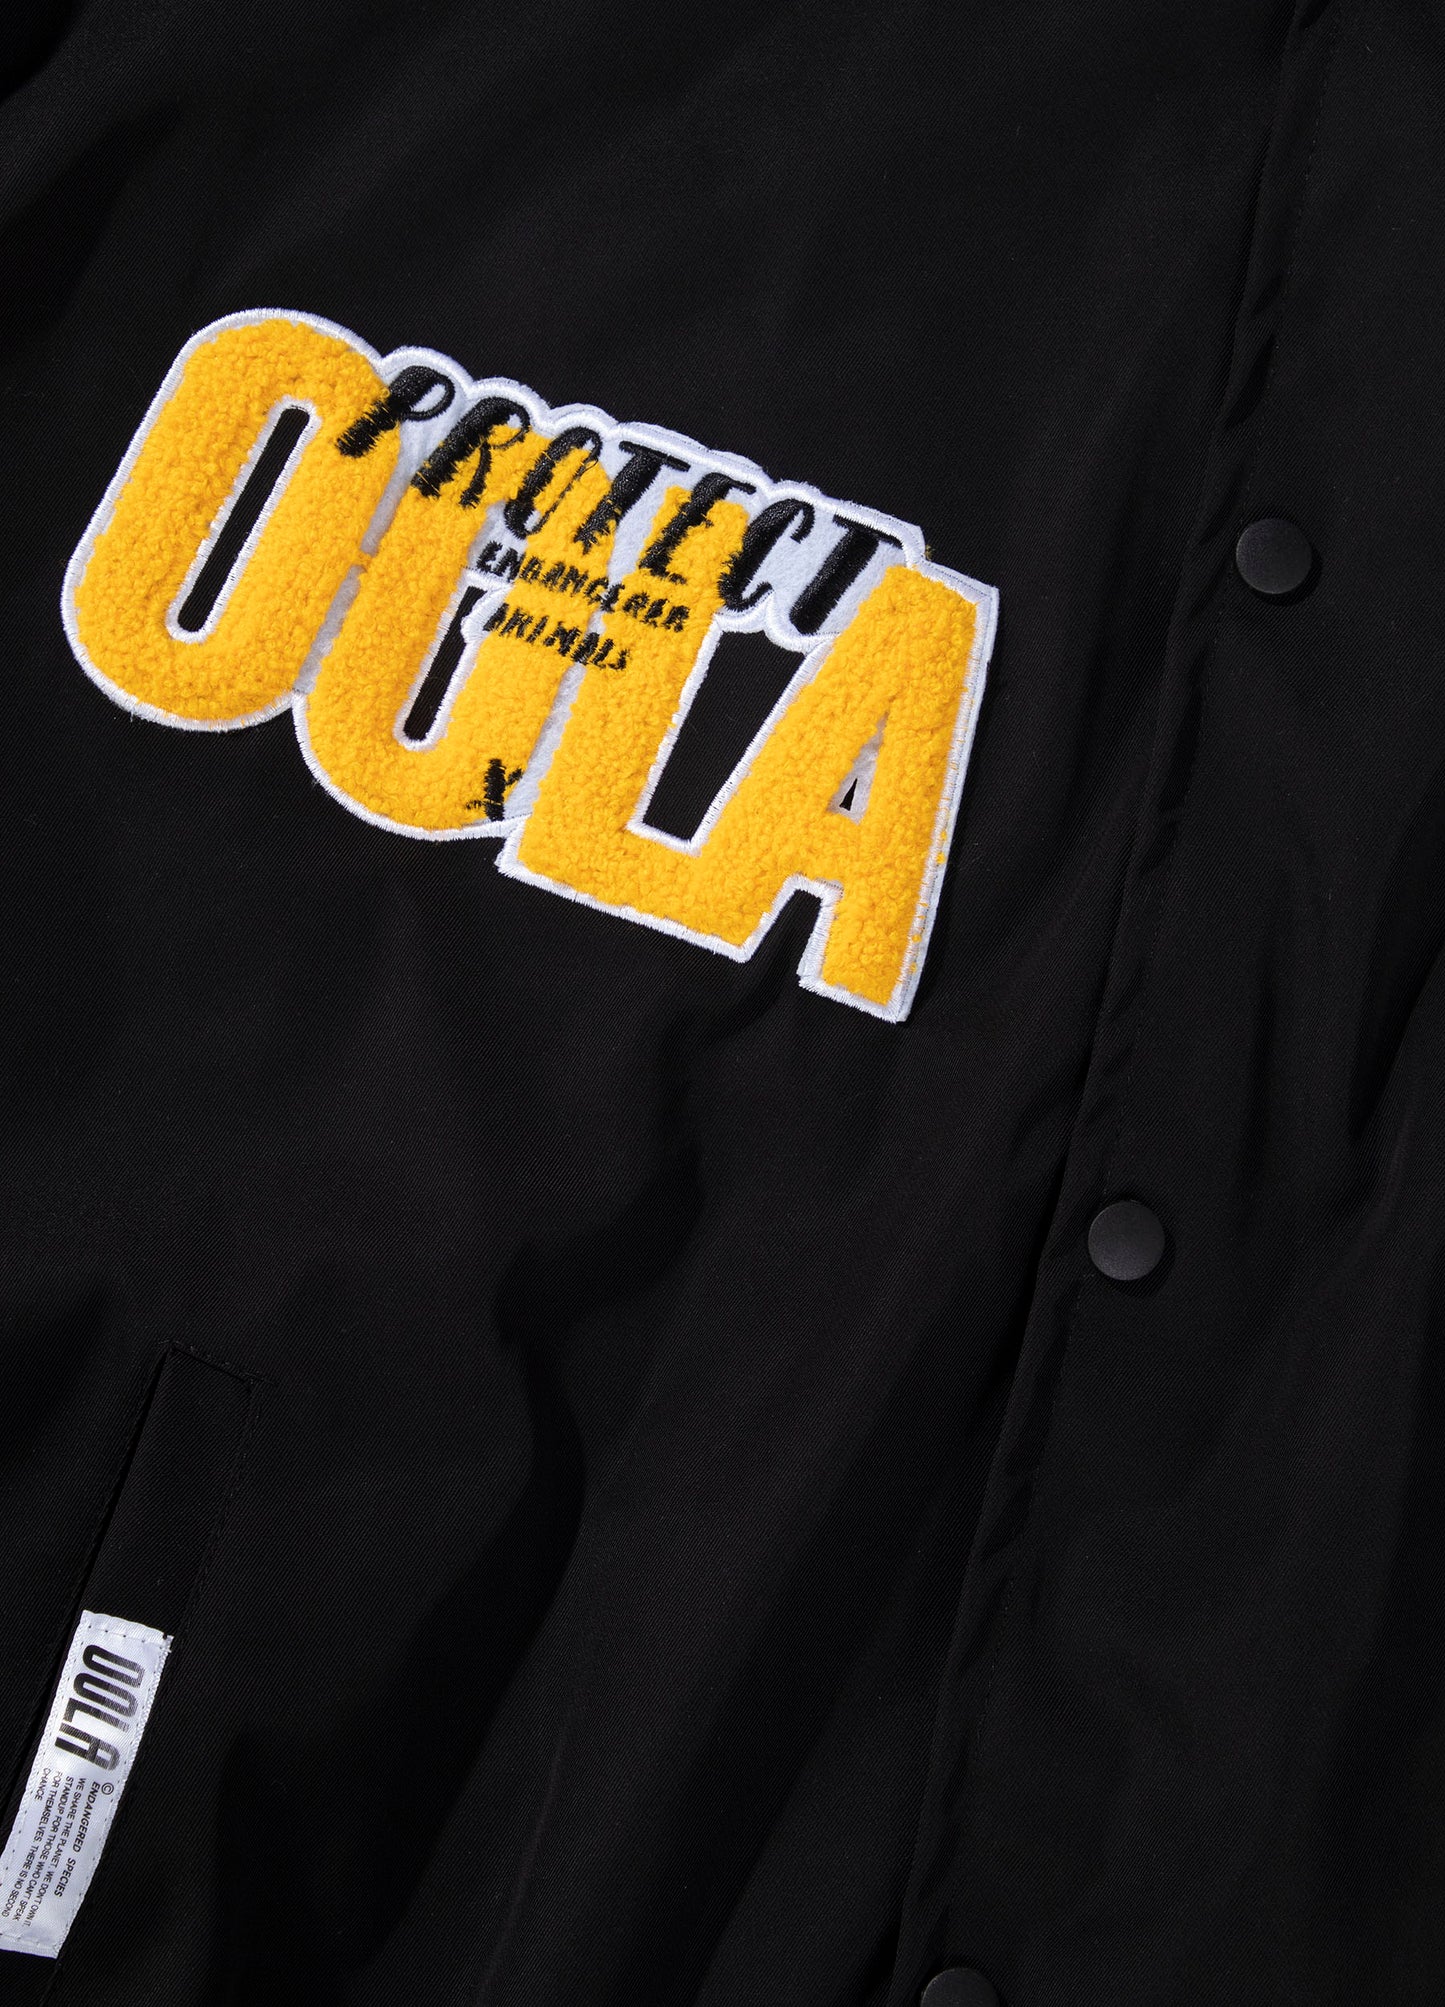 OOLA Unisex Fashion Baseball Jacket Endangered Animal Protection Theme Coat